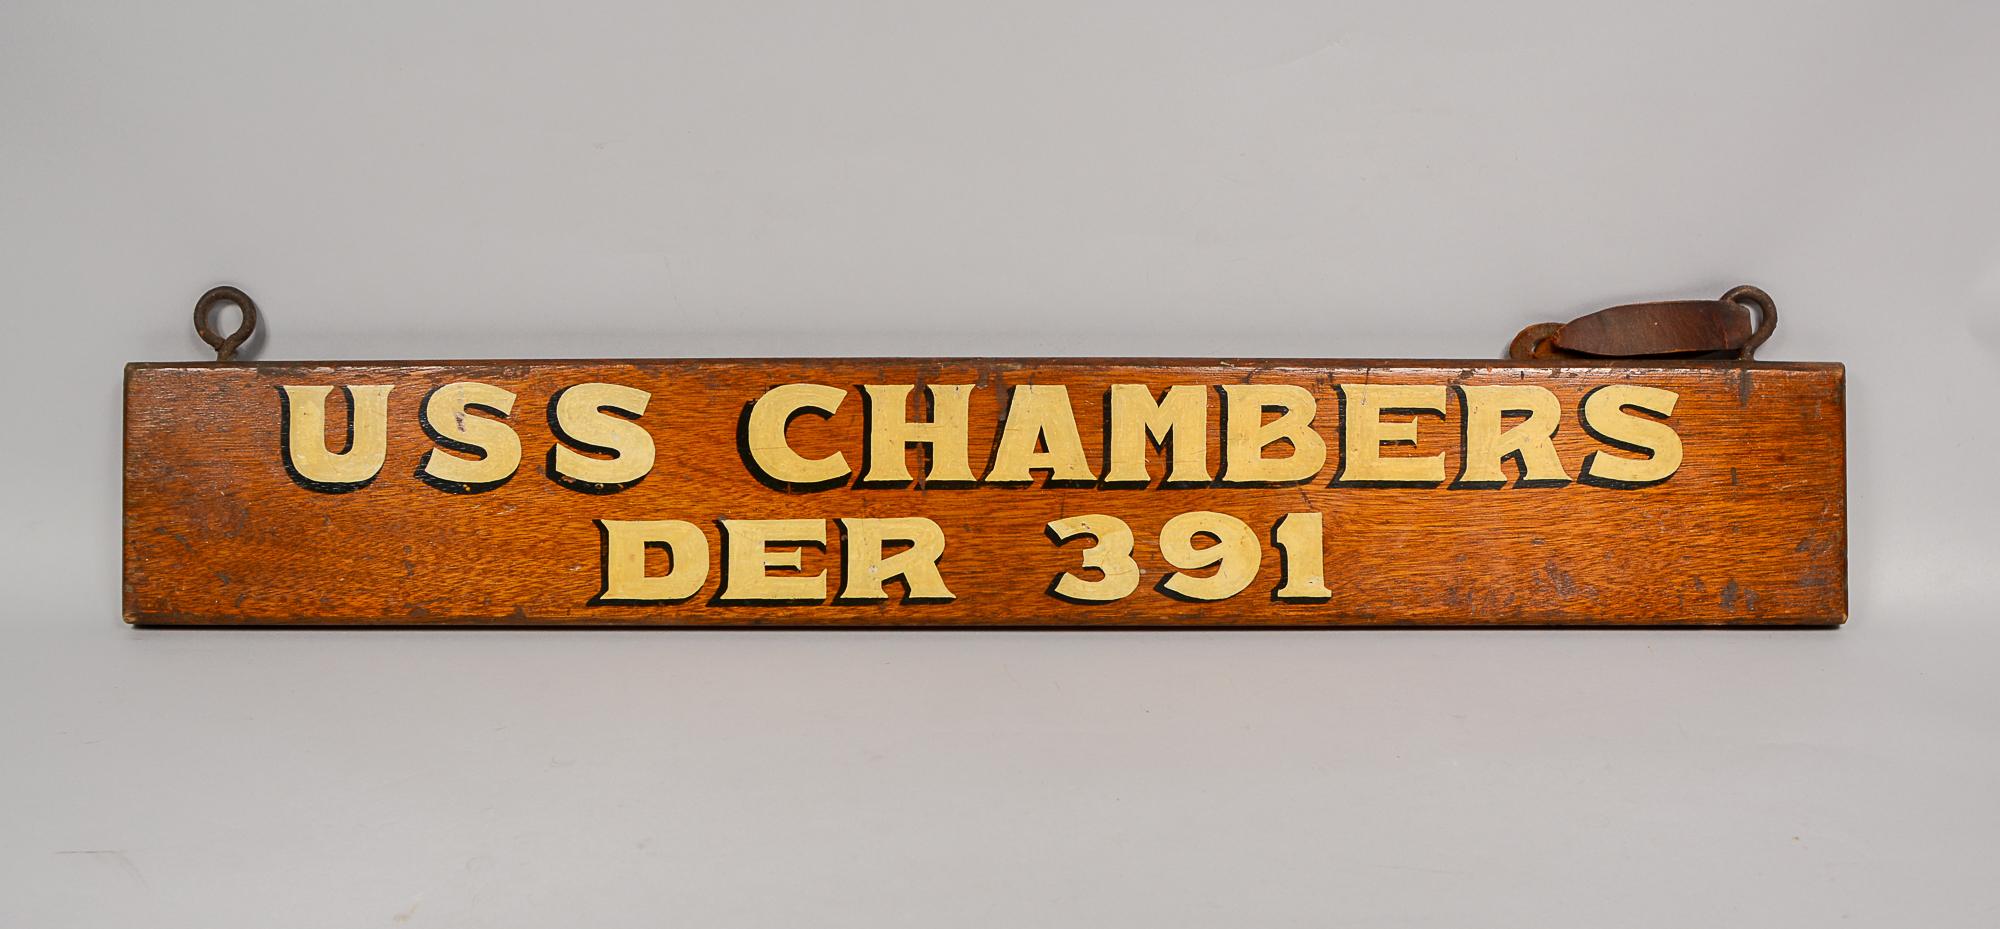 Panneau de nom de navire pour l'USS Chambers DER 391. Le Chambers était un destroyer d'escorte de classe Edsall. Le navire a été en service dans la marine américaine de 1943 à 1946 et de 1955 à 1960. De 1952 à 1954, il est prêté aux garde-côtes